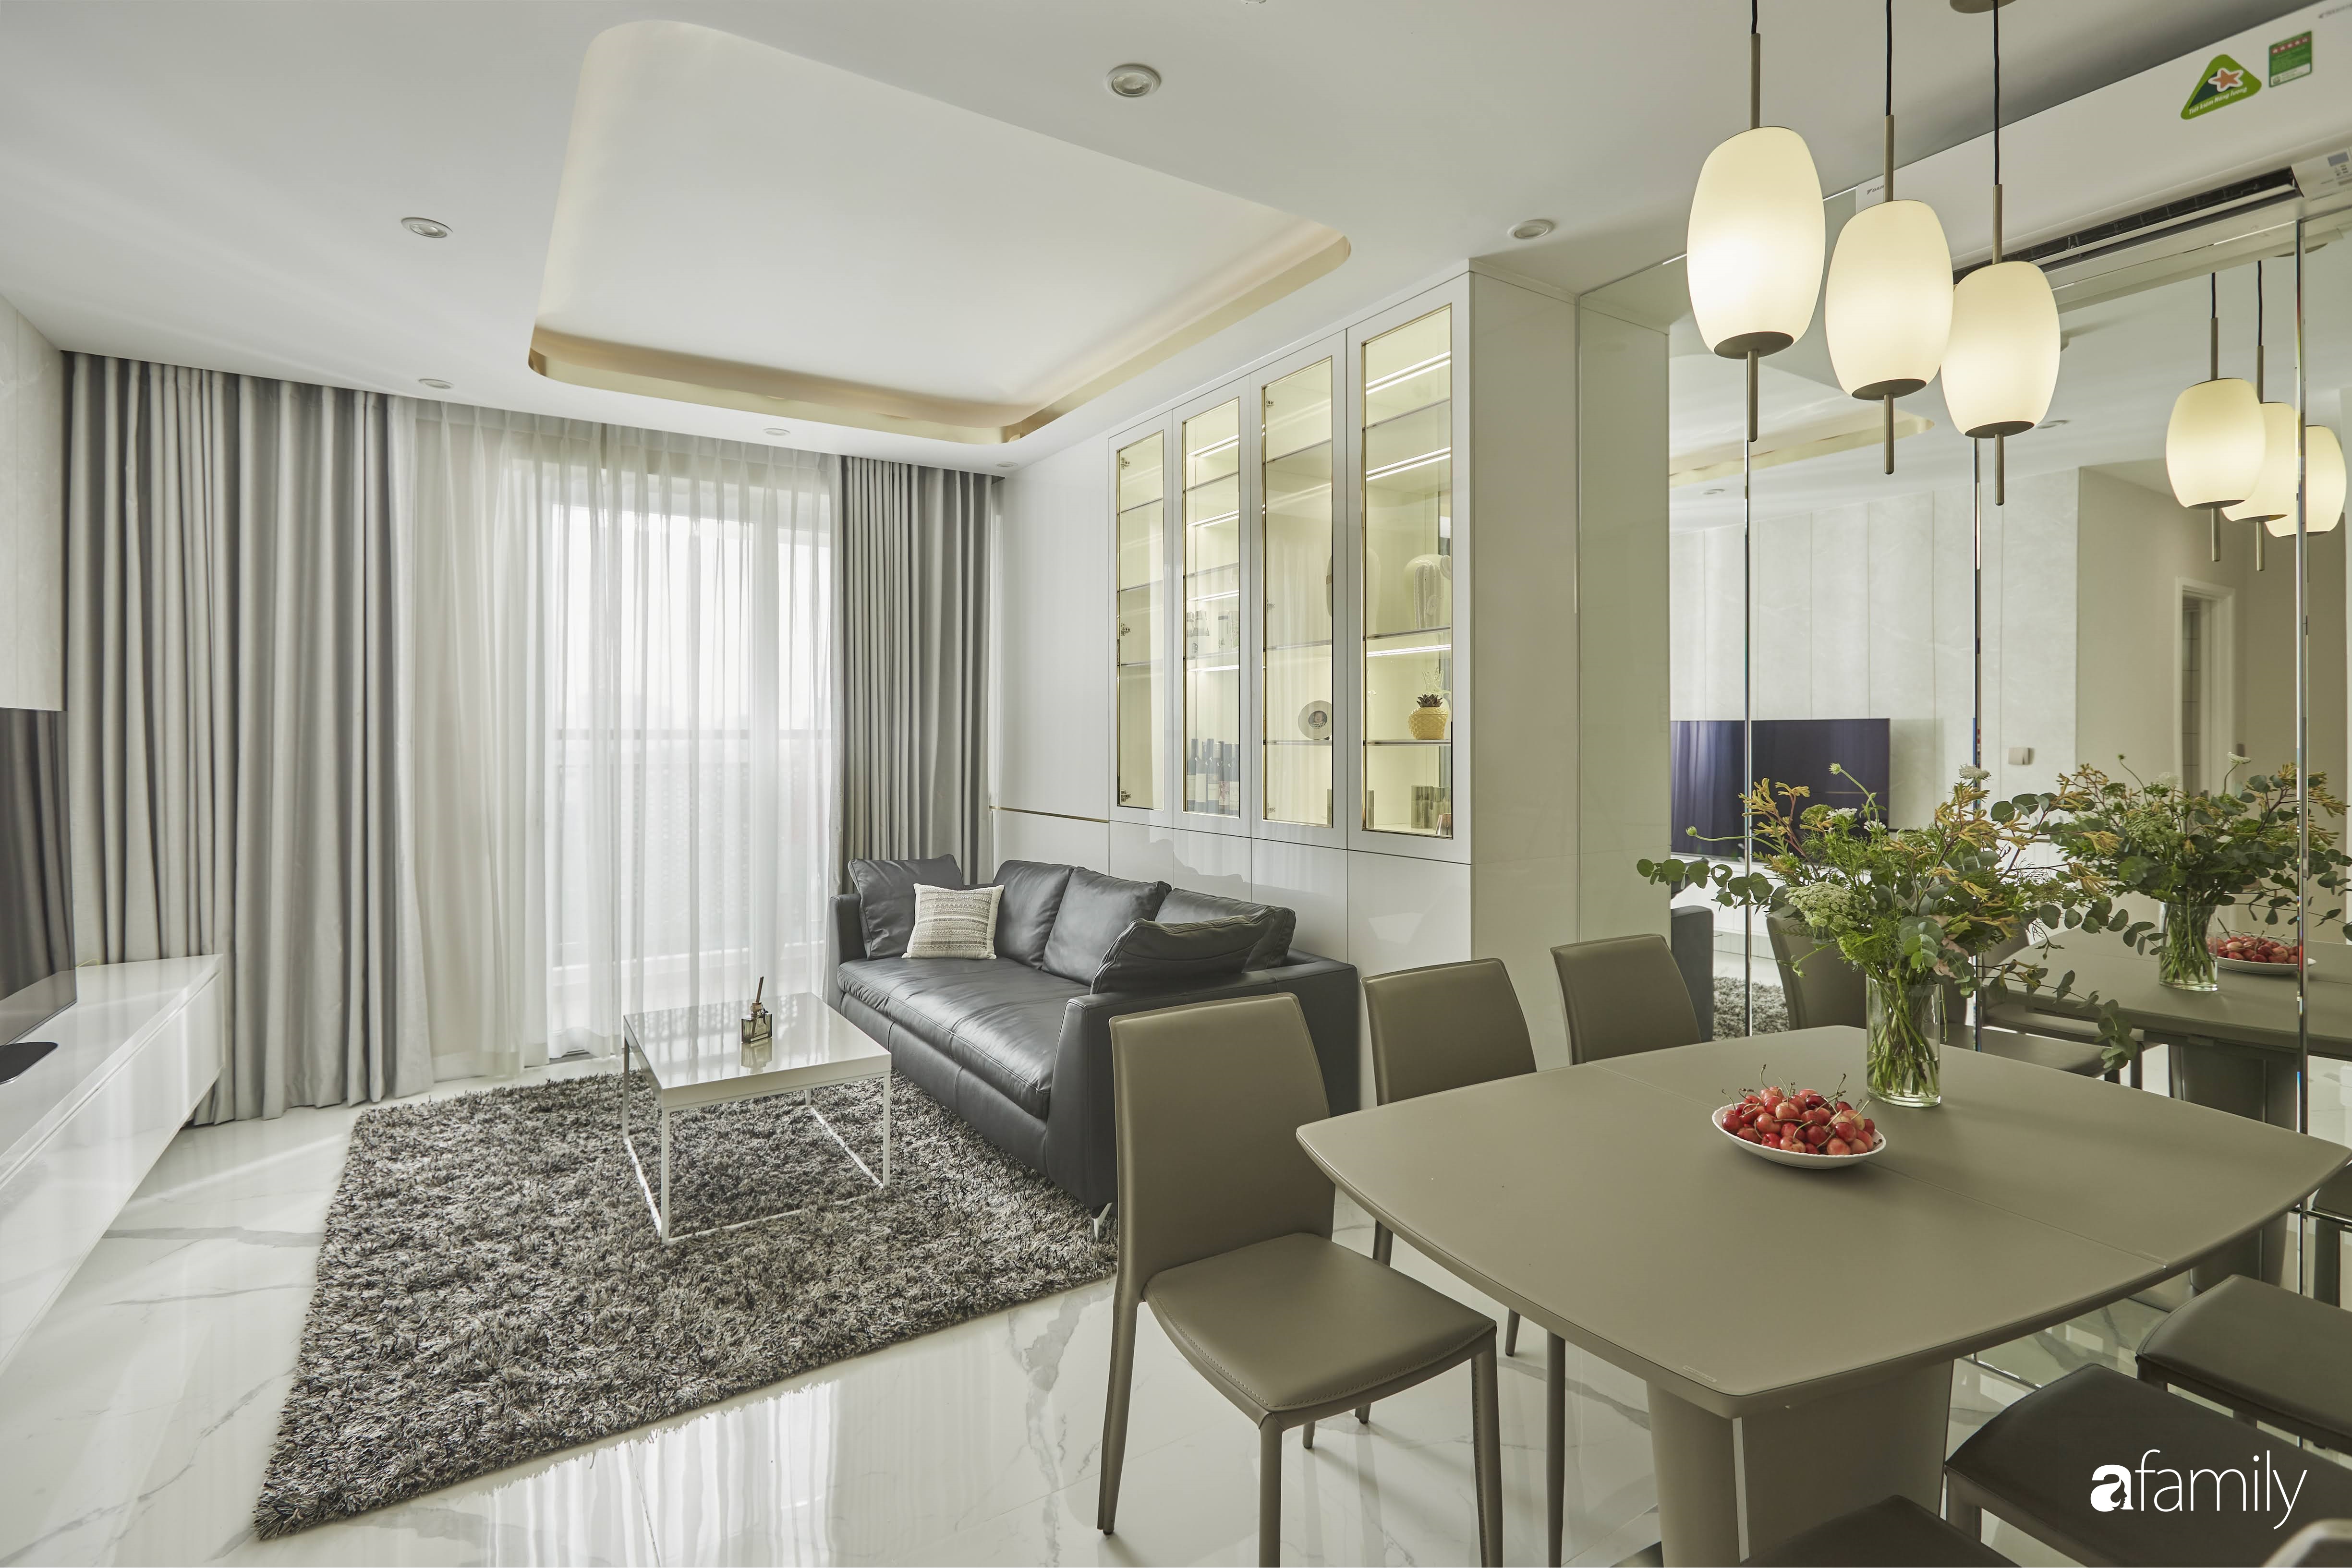 Căn hộ 85m² đẹp sang chảnh với nội thất cao cấp như khách sạn 5 sao ở TP HCM - Ảnh 5.